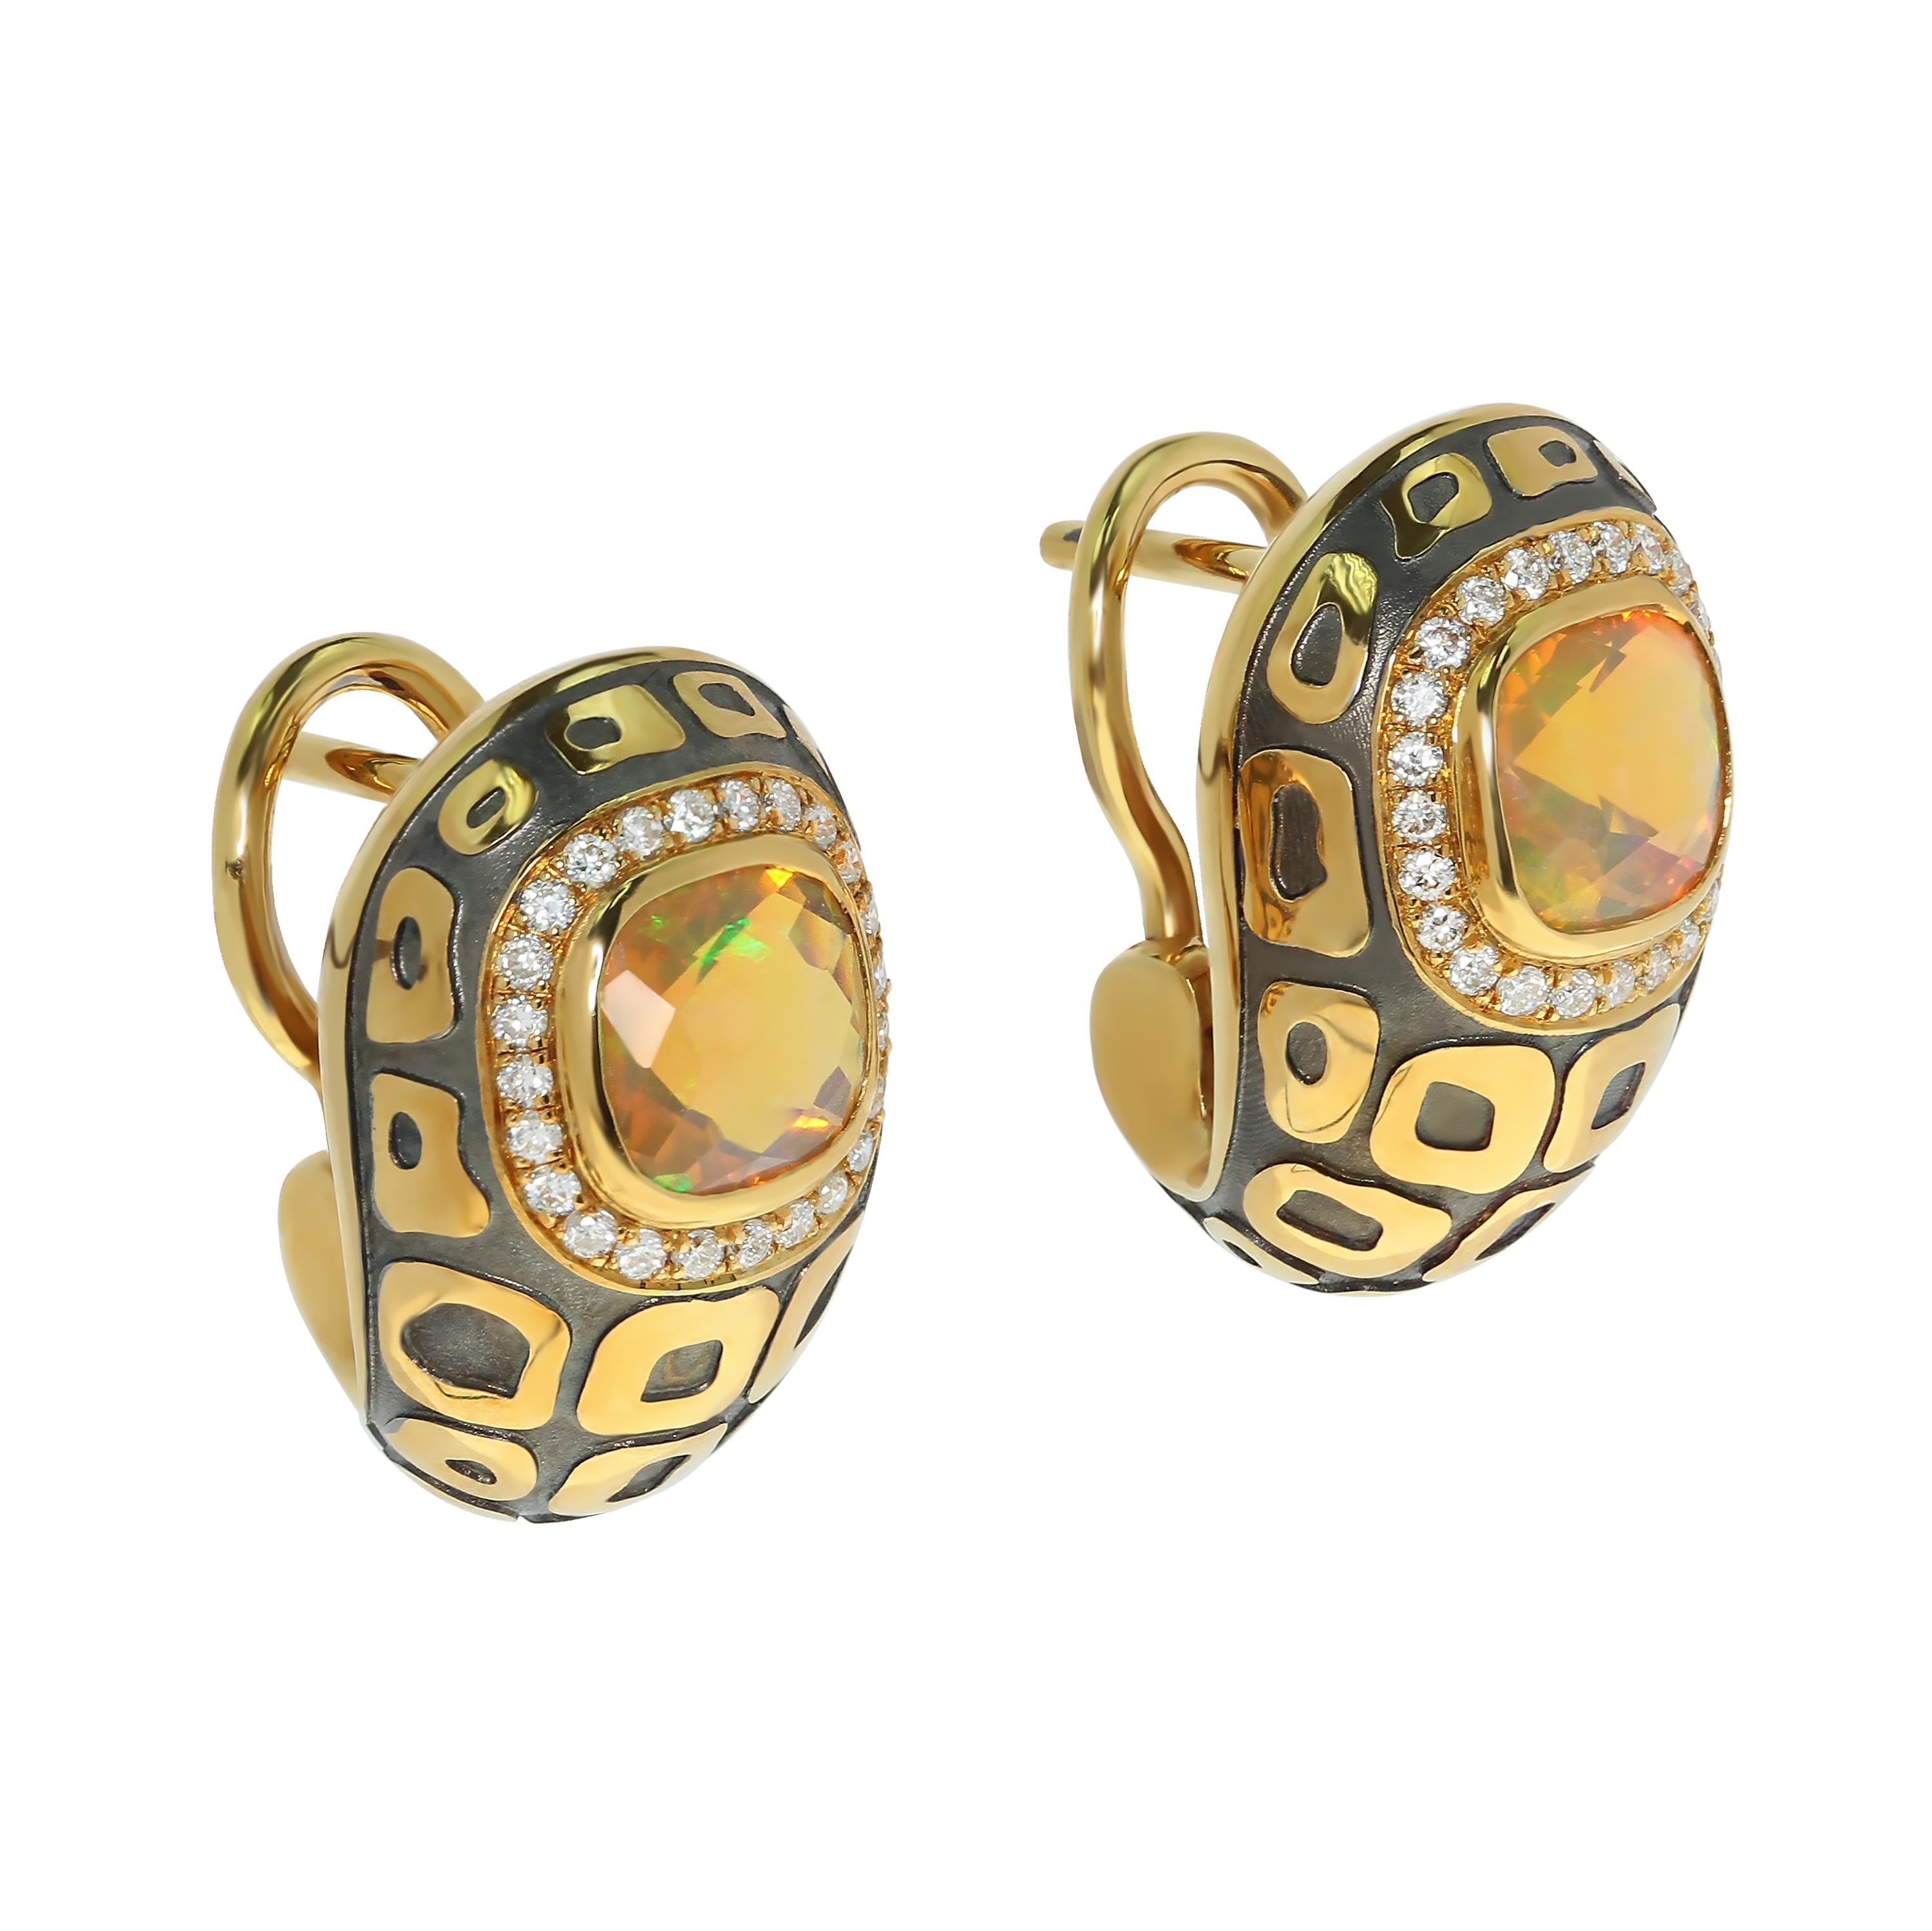 Äthiopischer Opal 0,99 Karat Diamanten 18 Karat Gelb- und Schwarzgold-Ohrringe
Beim Anblick der Opale ist es unmöglich, den Blick abzuwenden. Das gilt auch für diese Ohrringe. Die Kombination aus Orange-, Grün- und Blautönen dieser beiden